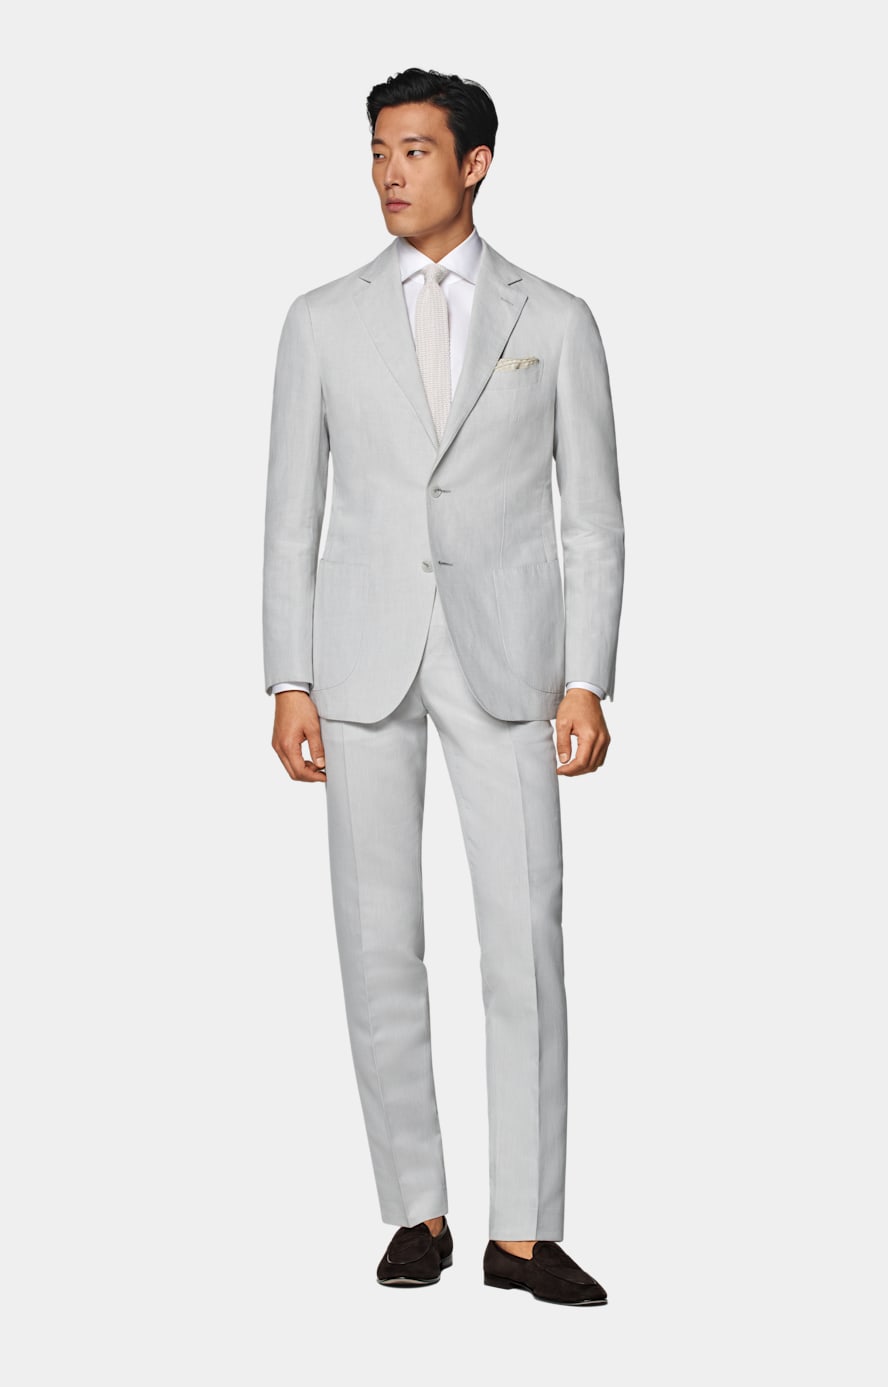  Havana ljusgrå kostym med tailored fit